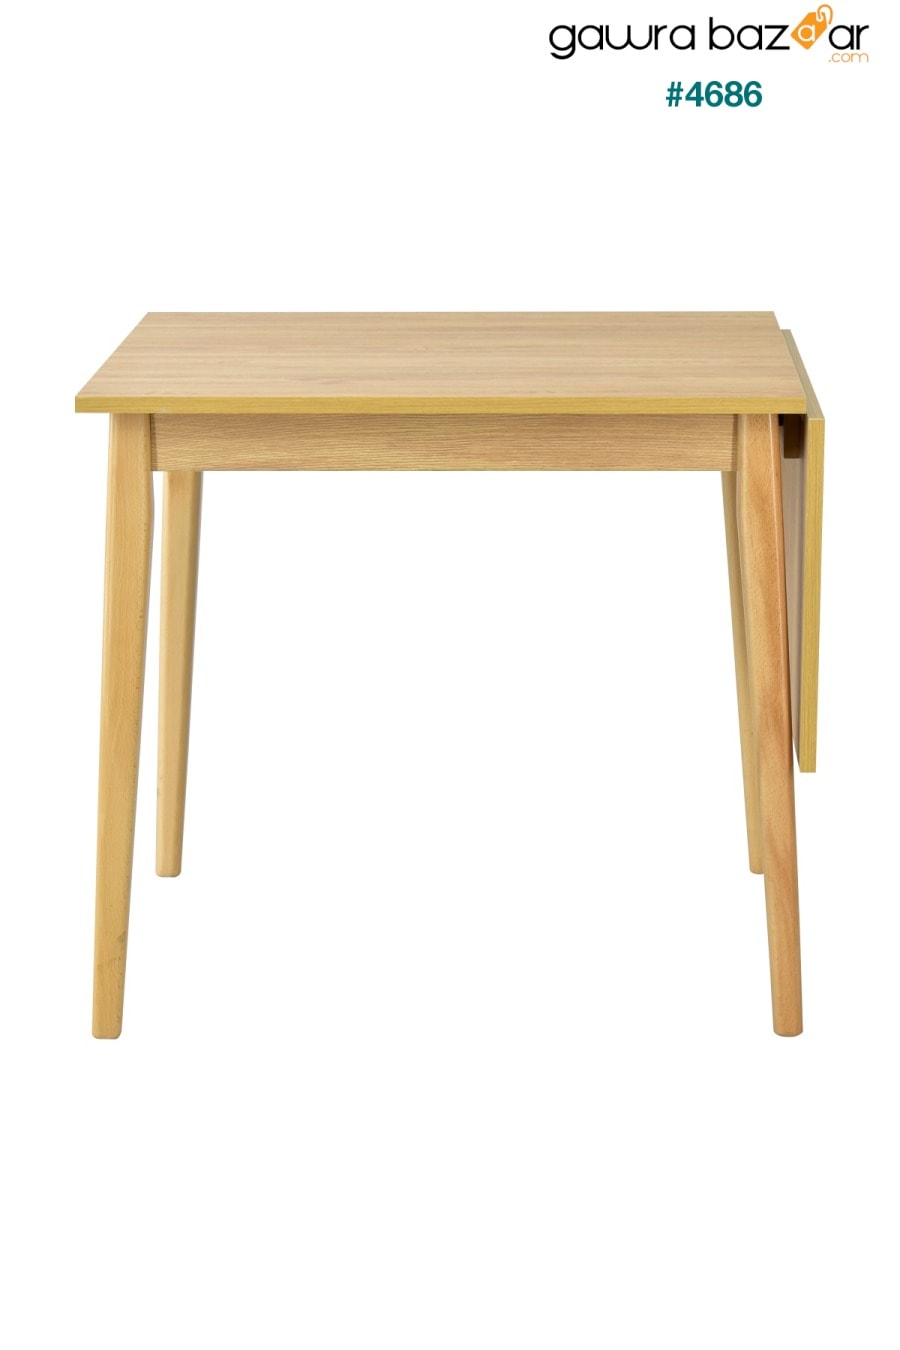 طاولة مطبخ خشبية قابلة للطي من افانوس - 70x80 سم VİLİNZE 1